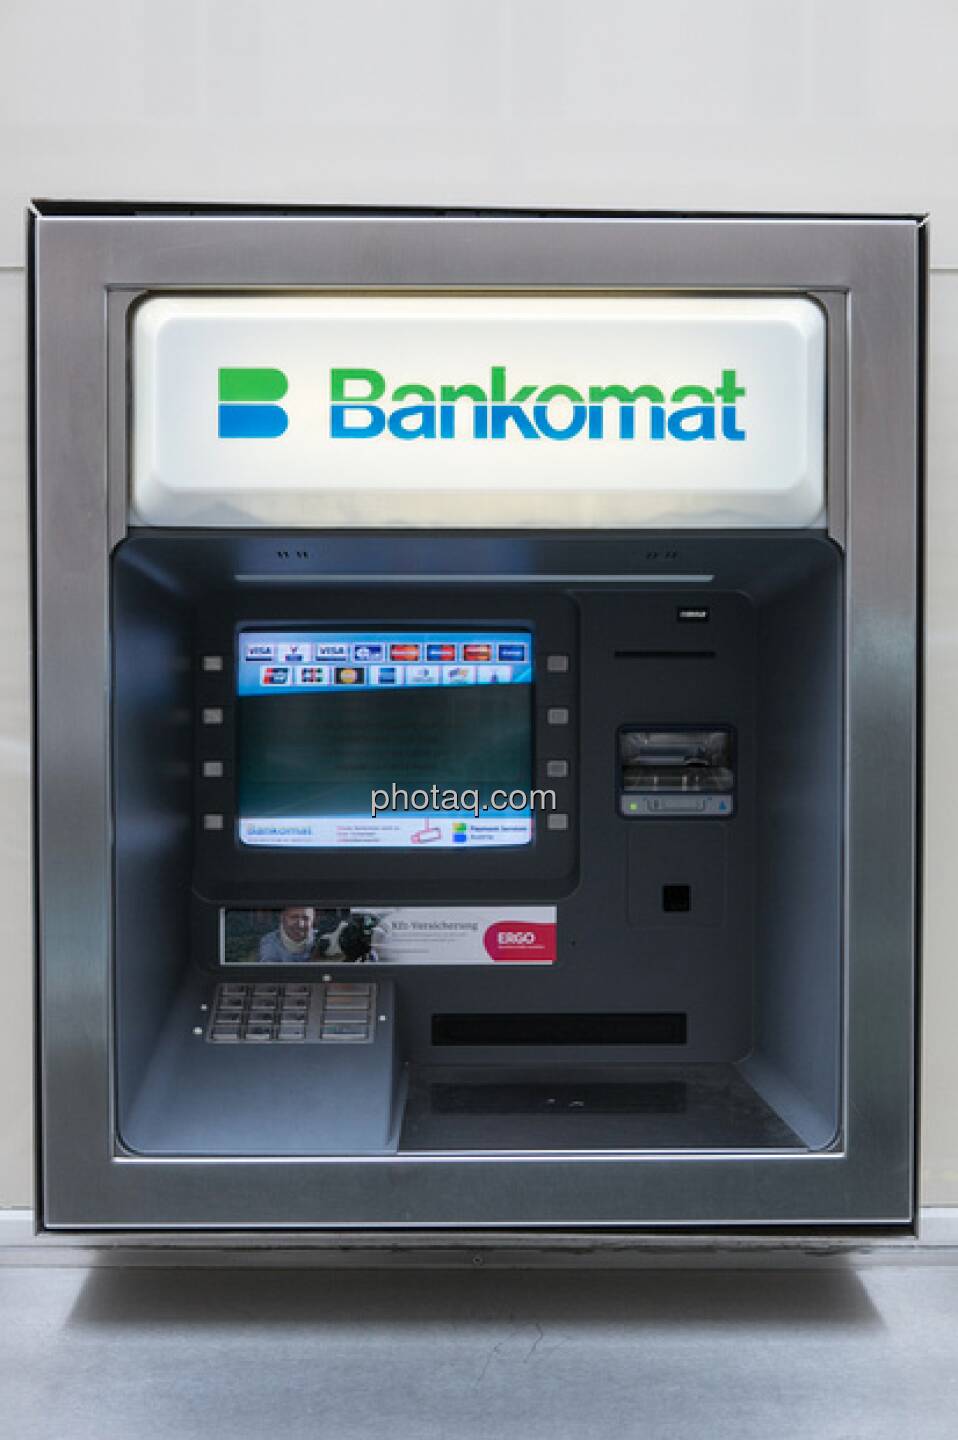 Bankomat by Martina Draper